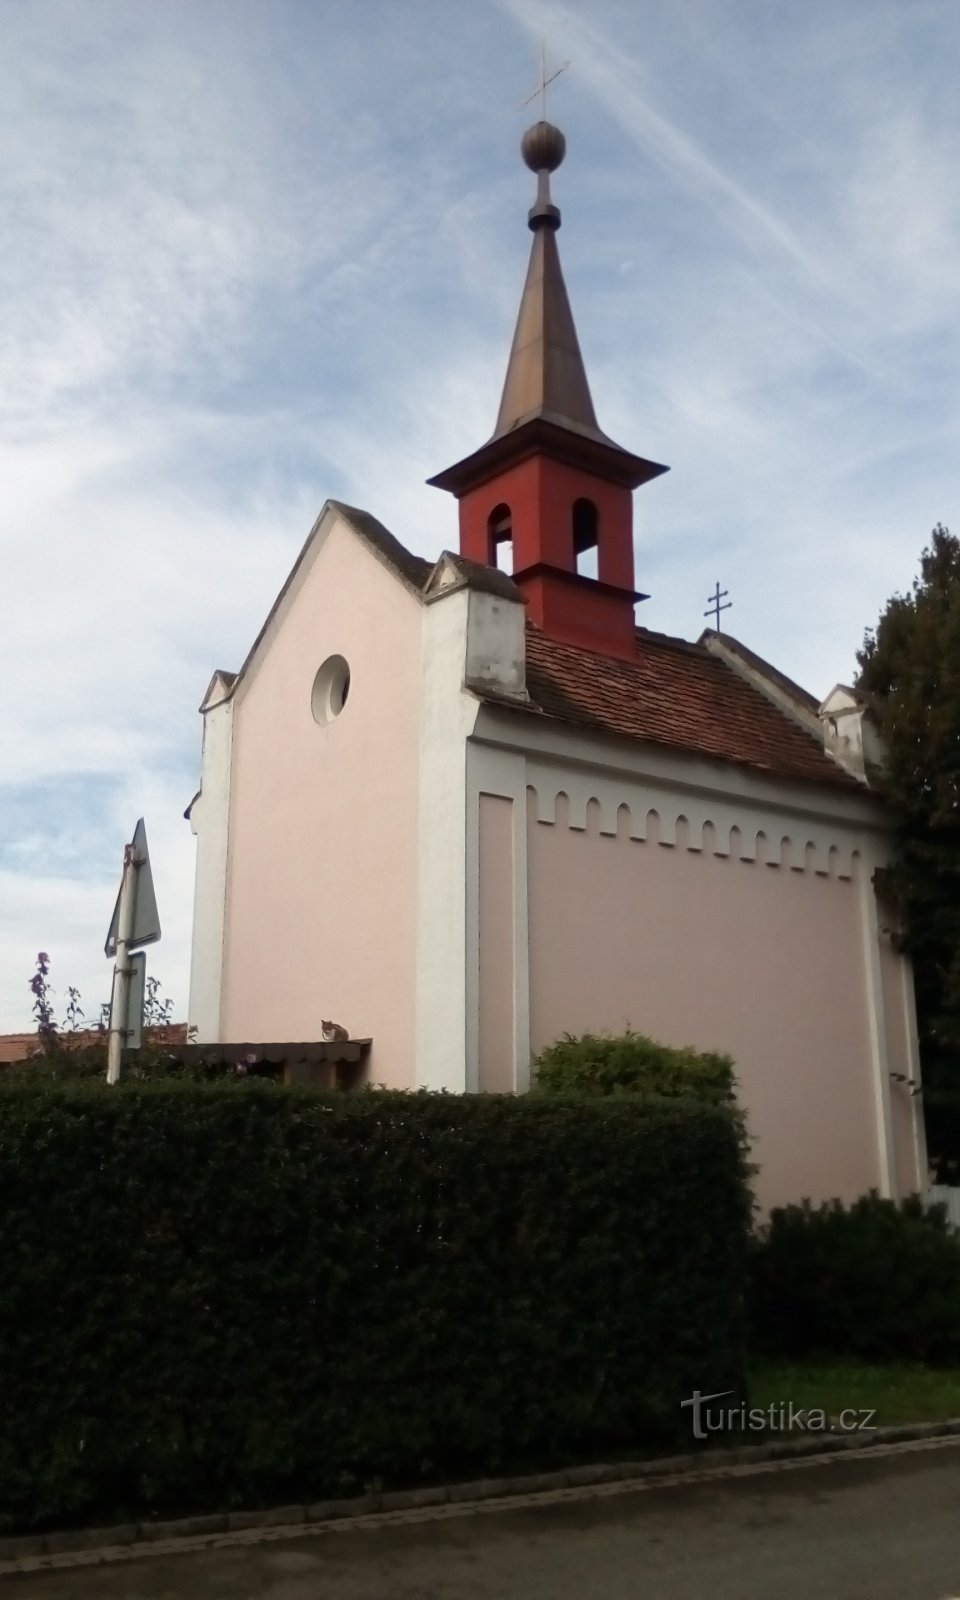 Nhà nguyện St. Václav ở Mnětice